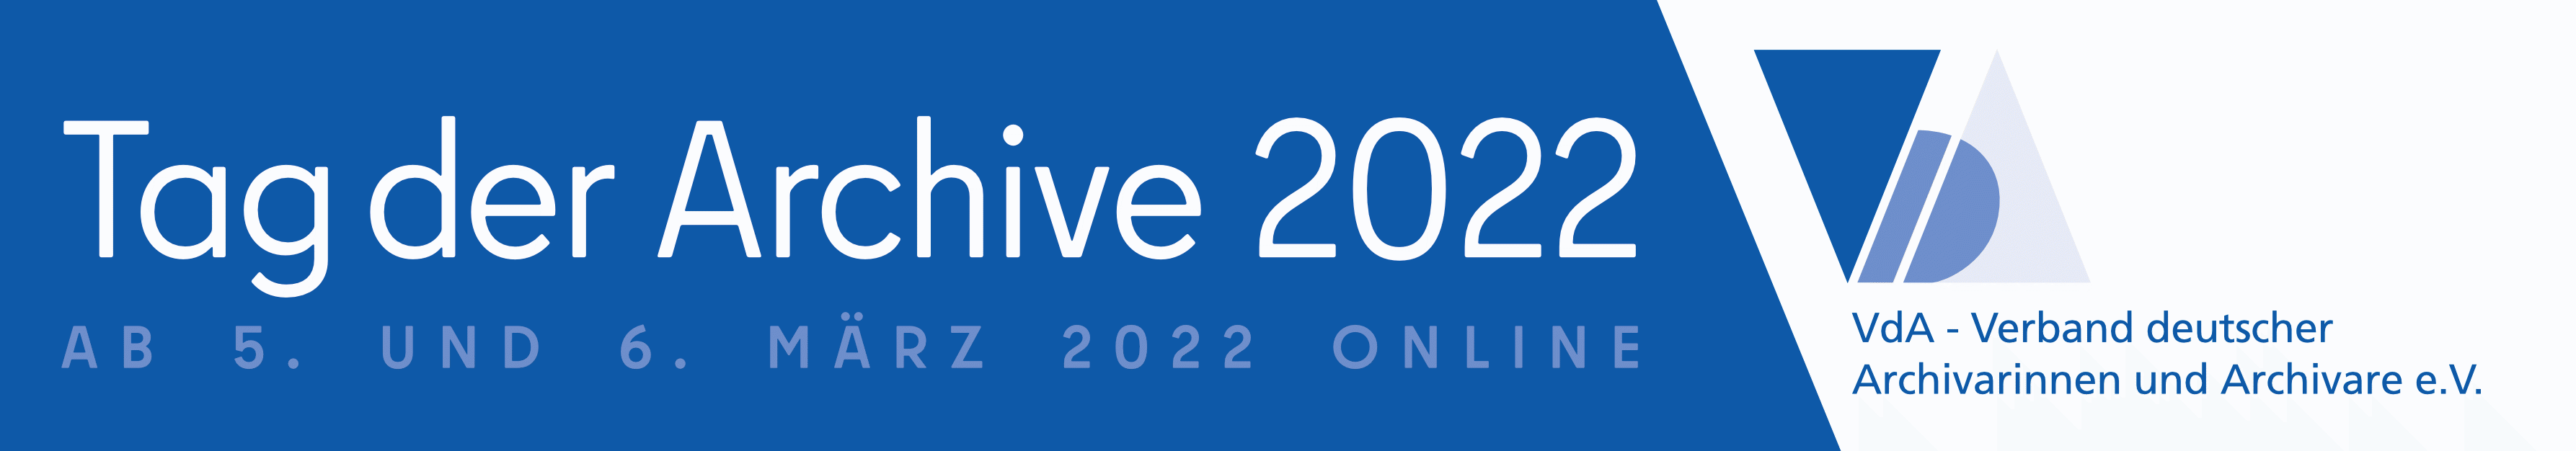 Tag der Archive 2022. Logo Verband deutscher Archivarinnen und Archivare e.v.